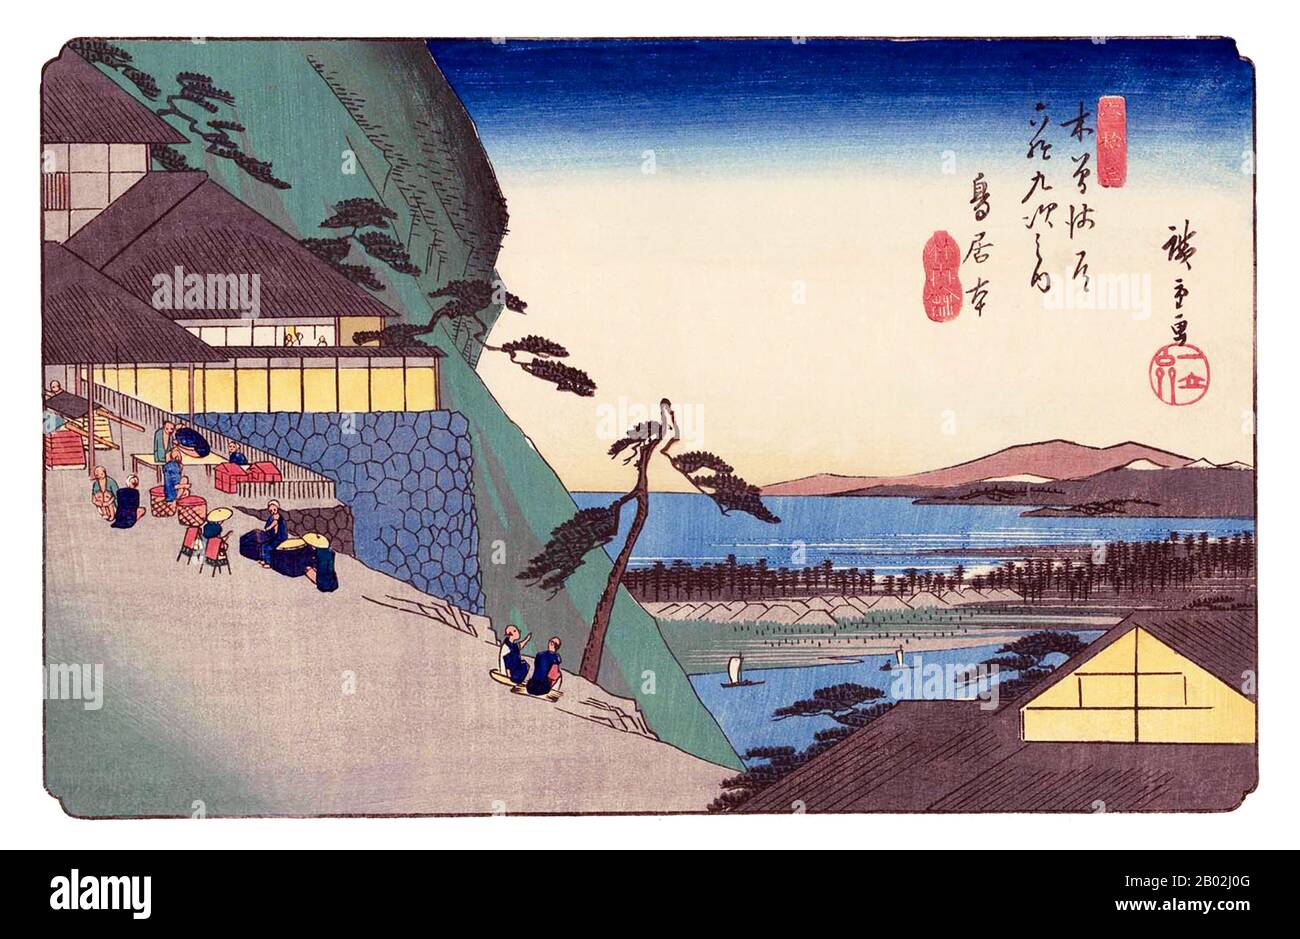 Las sesenta y nueve Estaciones del Kiso Kaidō (木曾街道六十九次 Kiso Kaidō Rokujūkyū-tsugi) o sesenta y nueve Estaciones del camino Kiso, son una serie de obras de ukiyo-e creadas por Utagawa Hiroshige (1797-1858) y Keisai Eisen (1790-1848). Hay 71 impresiones en total en la serie (una para cada una de las 69 estaciones de correos y Nihonbashi; Nakatsugawa-juku tiene dos copias). El nombre común para el Kiso Kaidō es 'Nakasendō' o 'Central Mountain Highway', por lo que esta serie es también comúnmente conocida como las sesenta y nueve Estaciones del Nakasendō. El Nakasendō fue una de Las Cinco rutas construidas bajo Tokugawa Ieyasu, A. Foto de stock